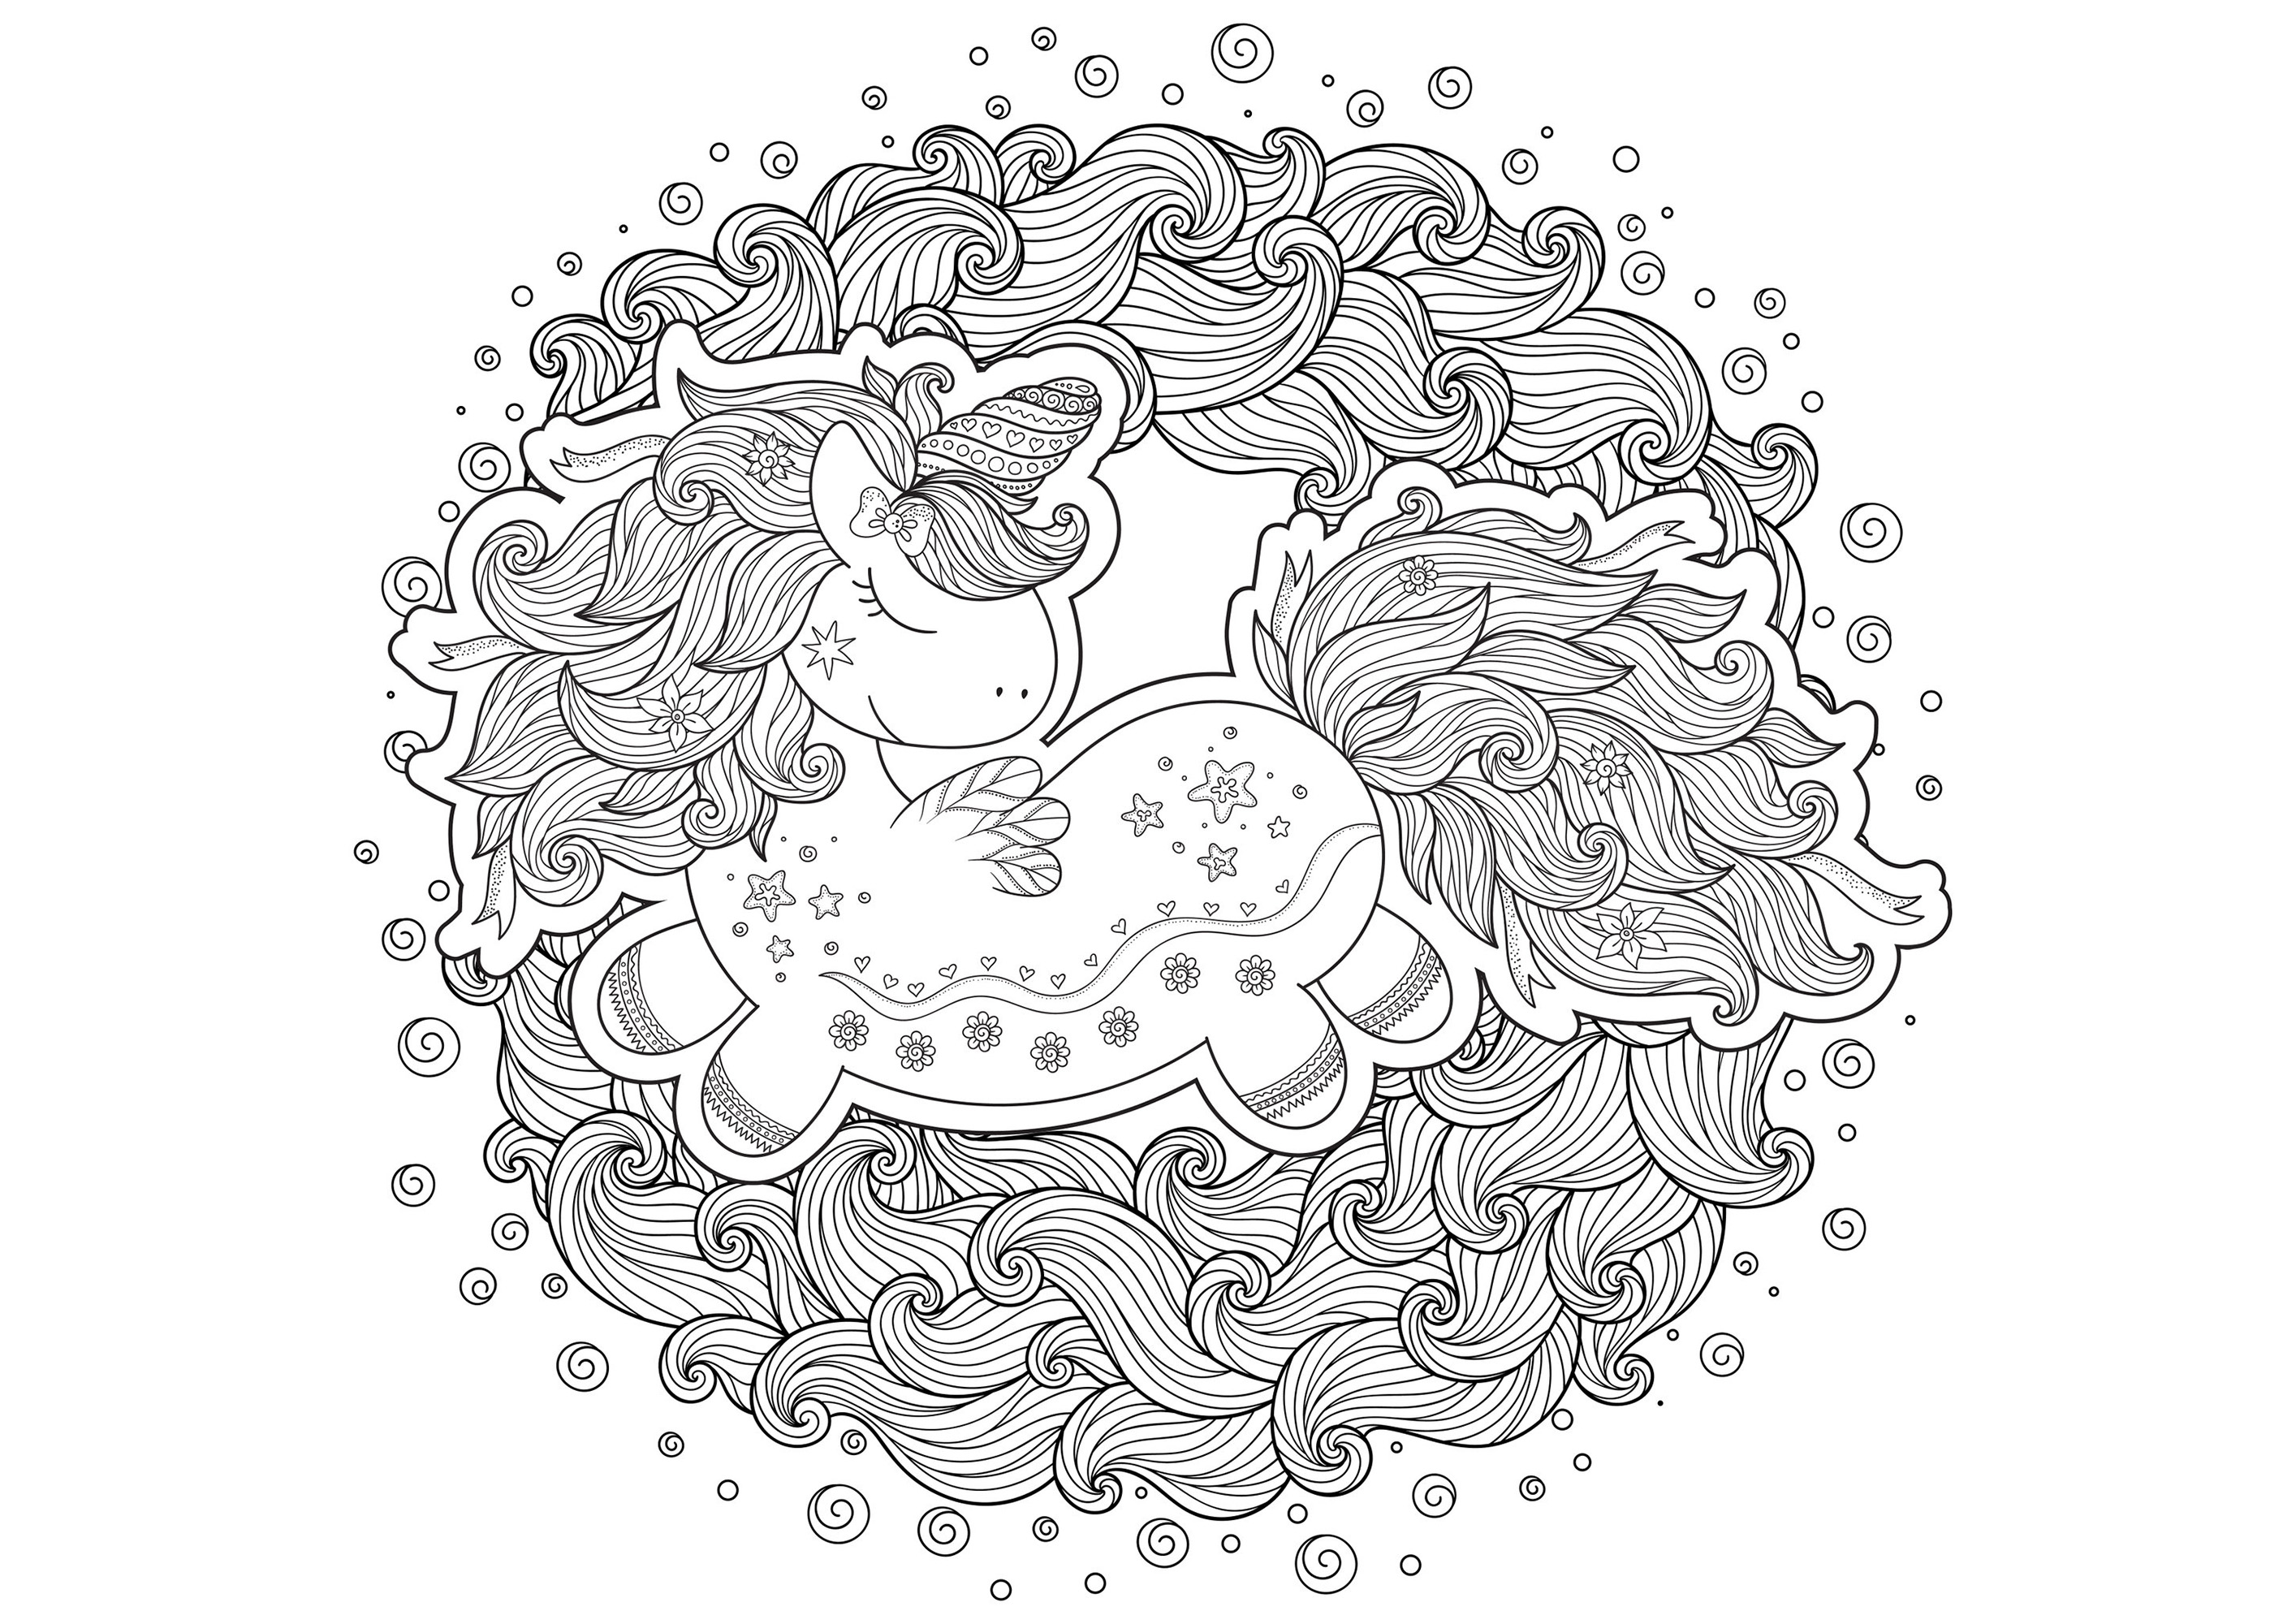 Unicornio dibujado en estilo cartoon, en medio de olas formando un círculo, Artista : Karpenyuk   Origen : 123rf